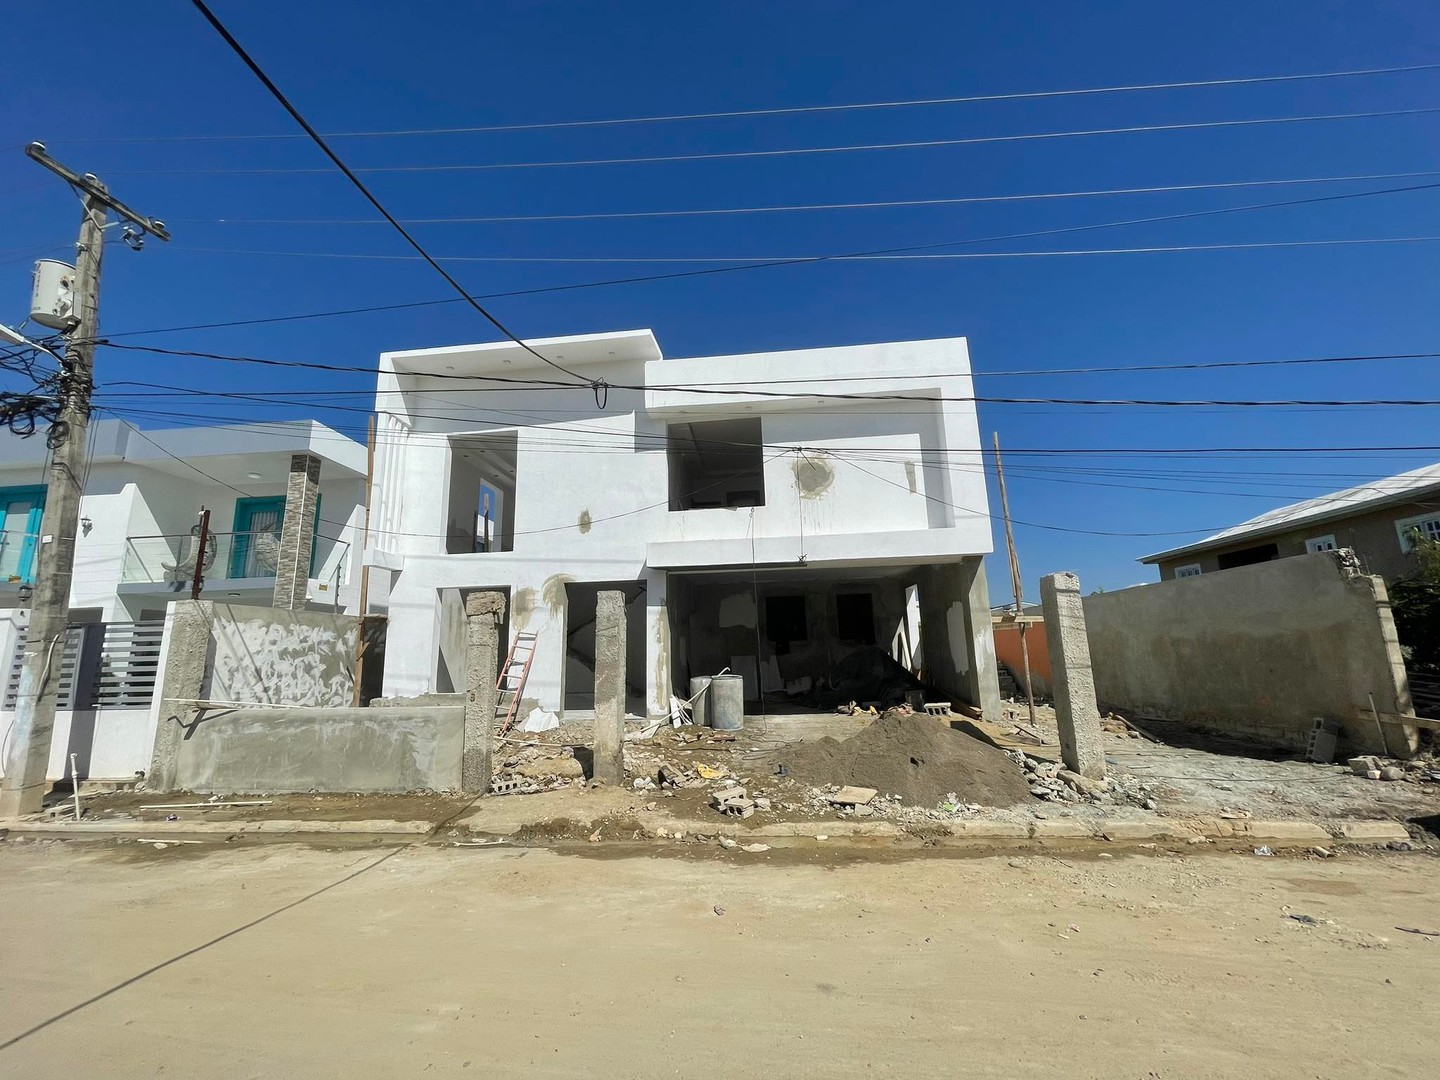 casas - Casa En Construcción, Amplios Espacios, 390 Mts de Solar  Próximo  Al Homs  3